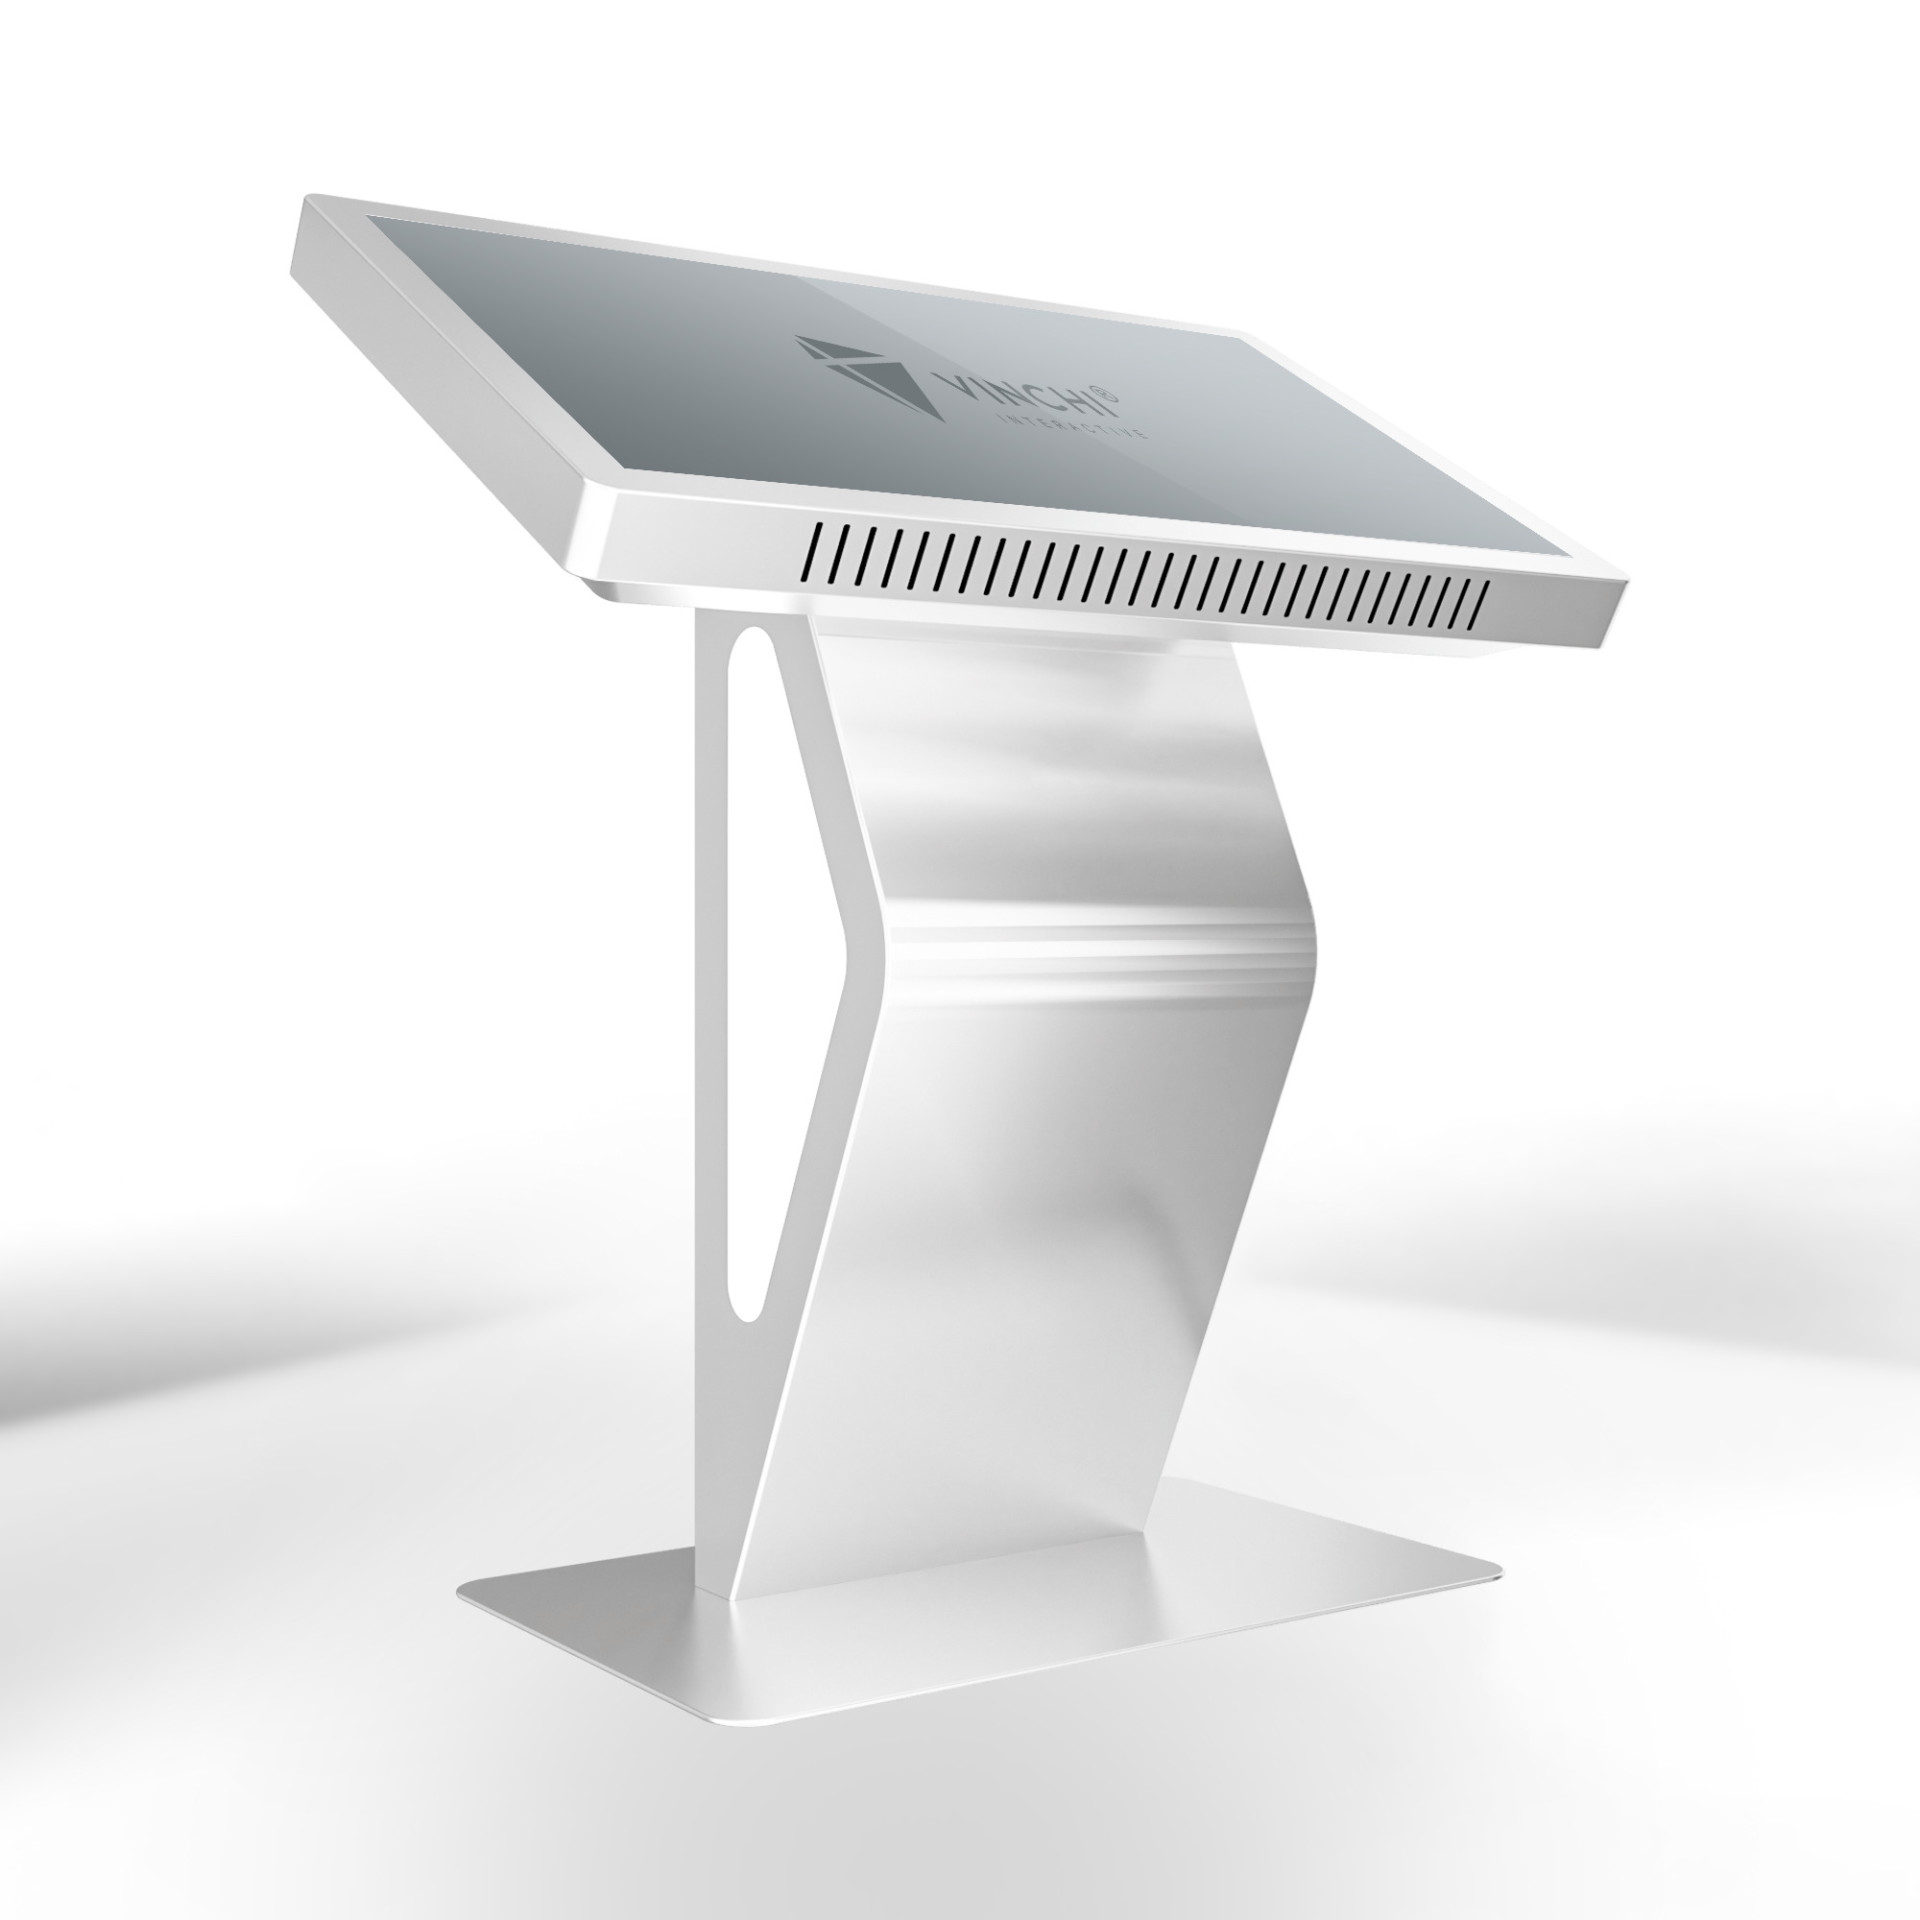 Интерактивный стол VINCHI 8 с диагональю 55 дюймов